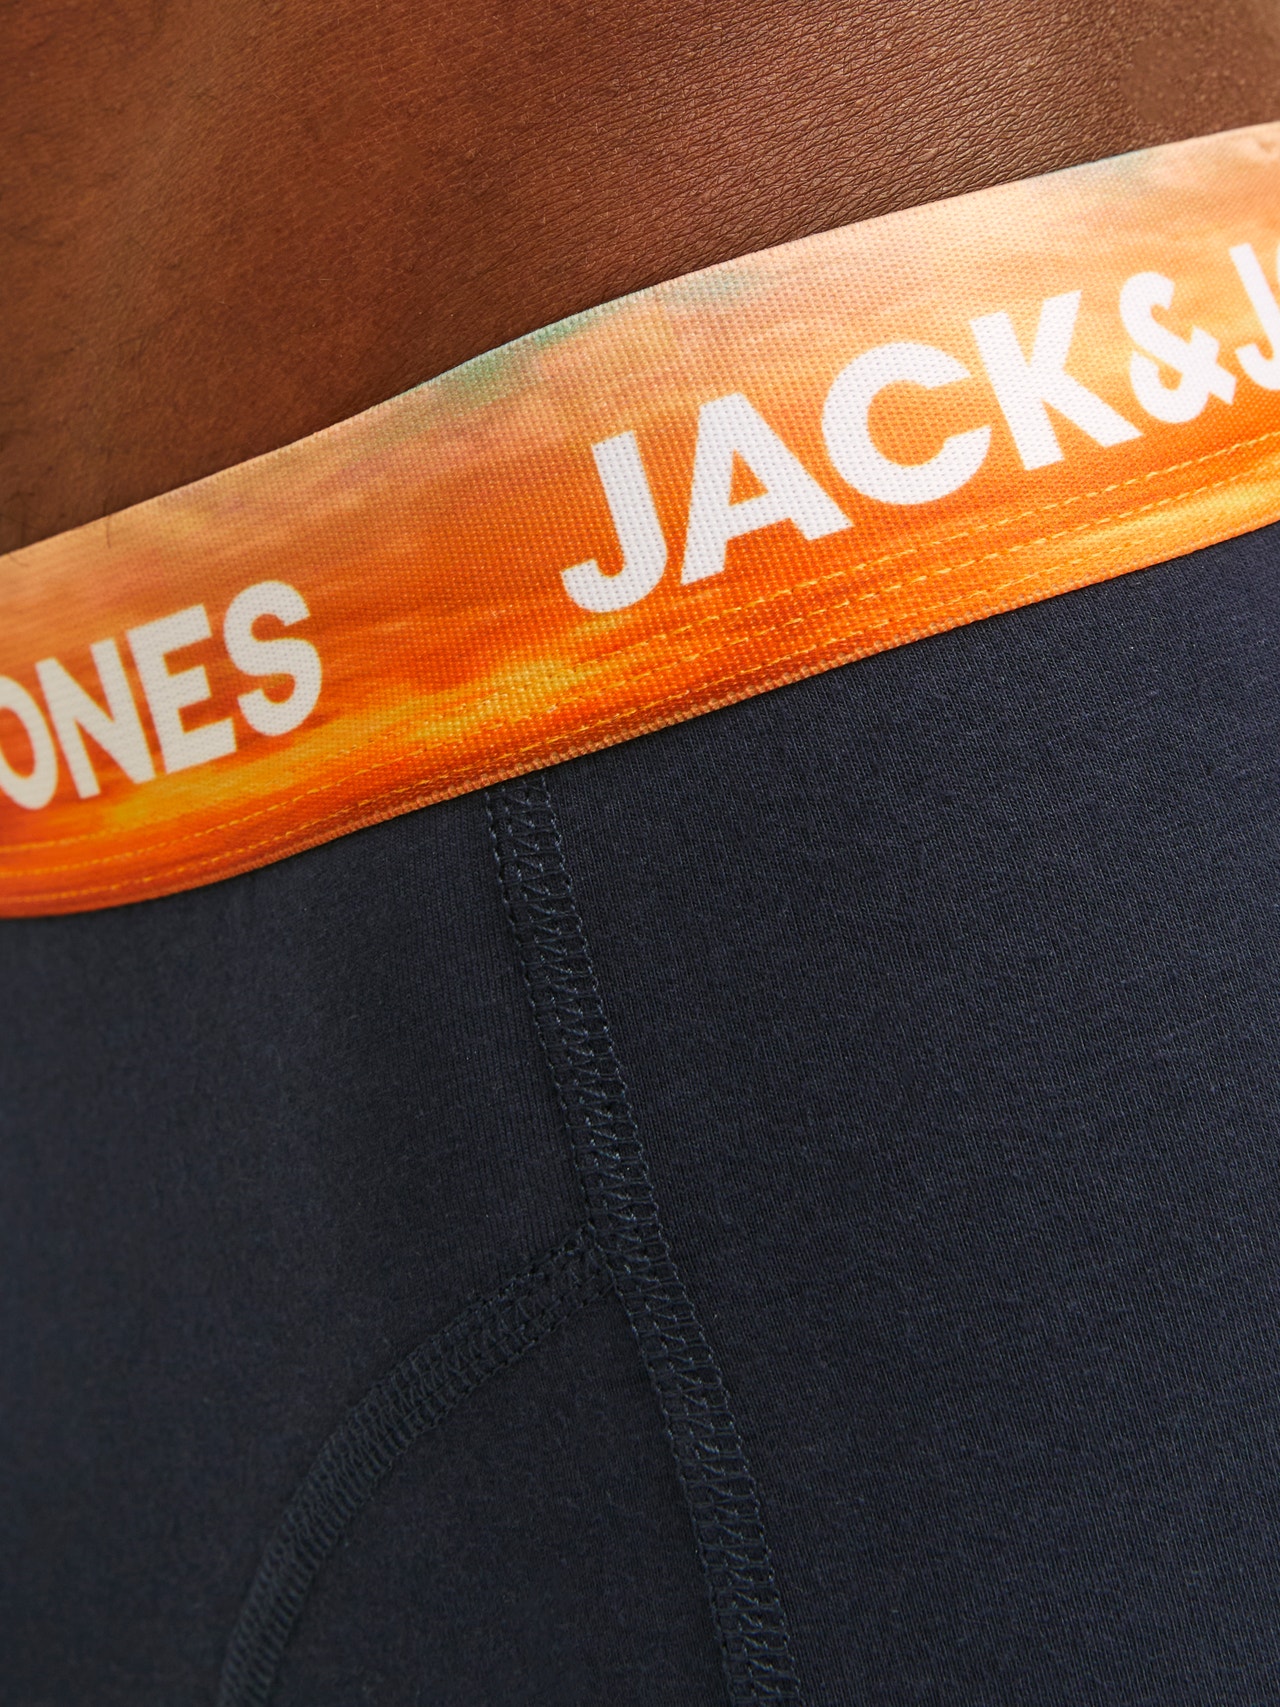 Jack & Jones 3-pack Trunks -Navy Blazer - 12255810